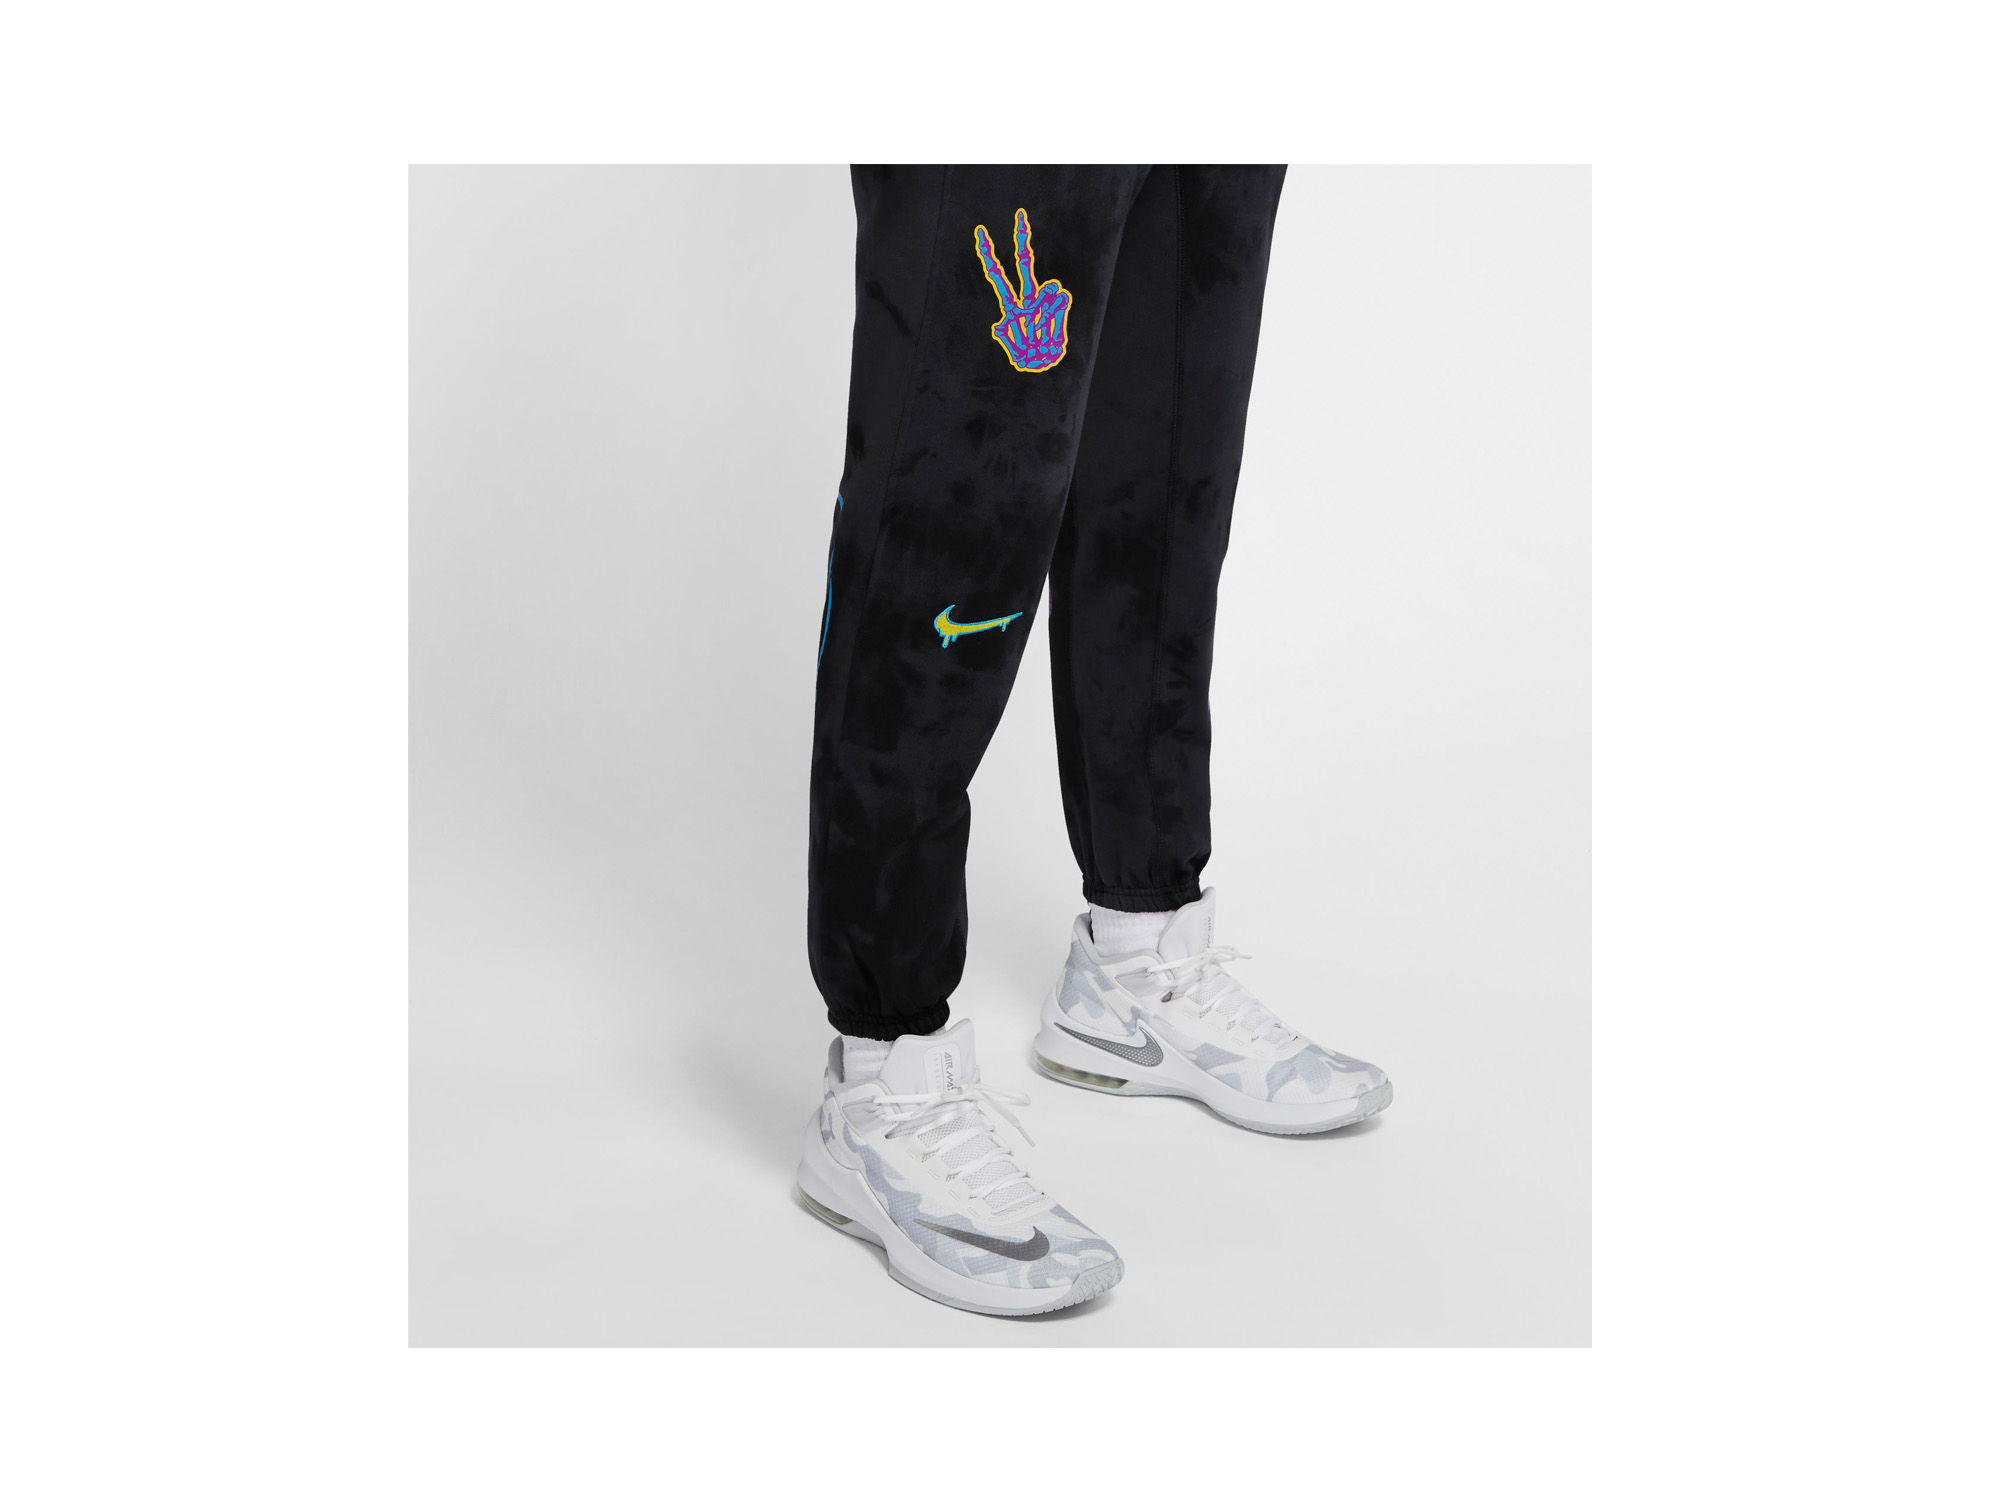 Nike "Peace, Love, Basketball" Pants